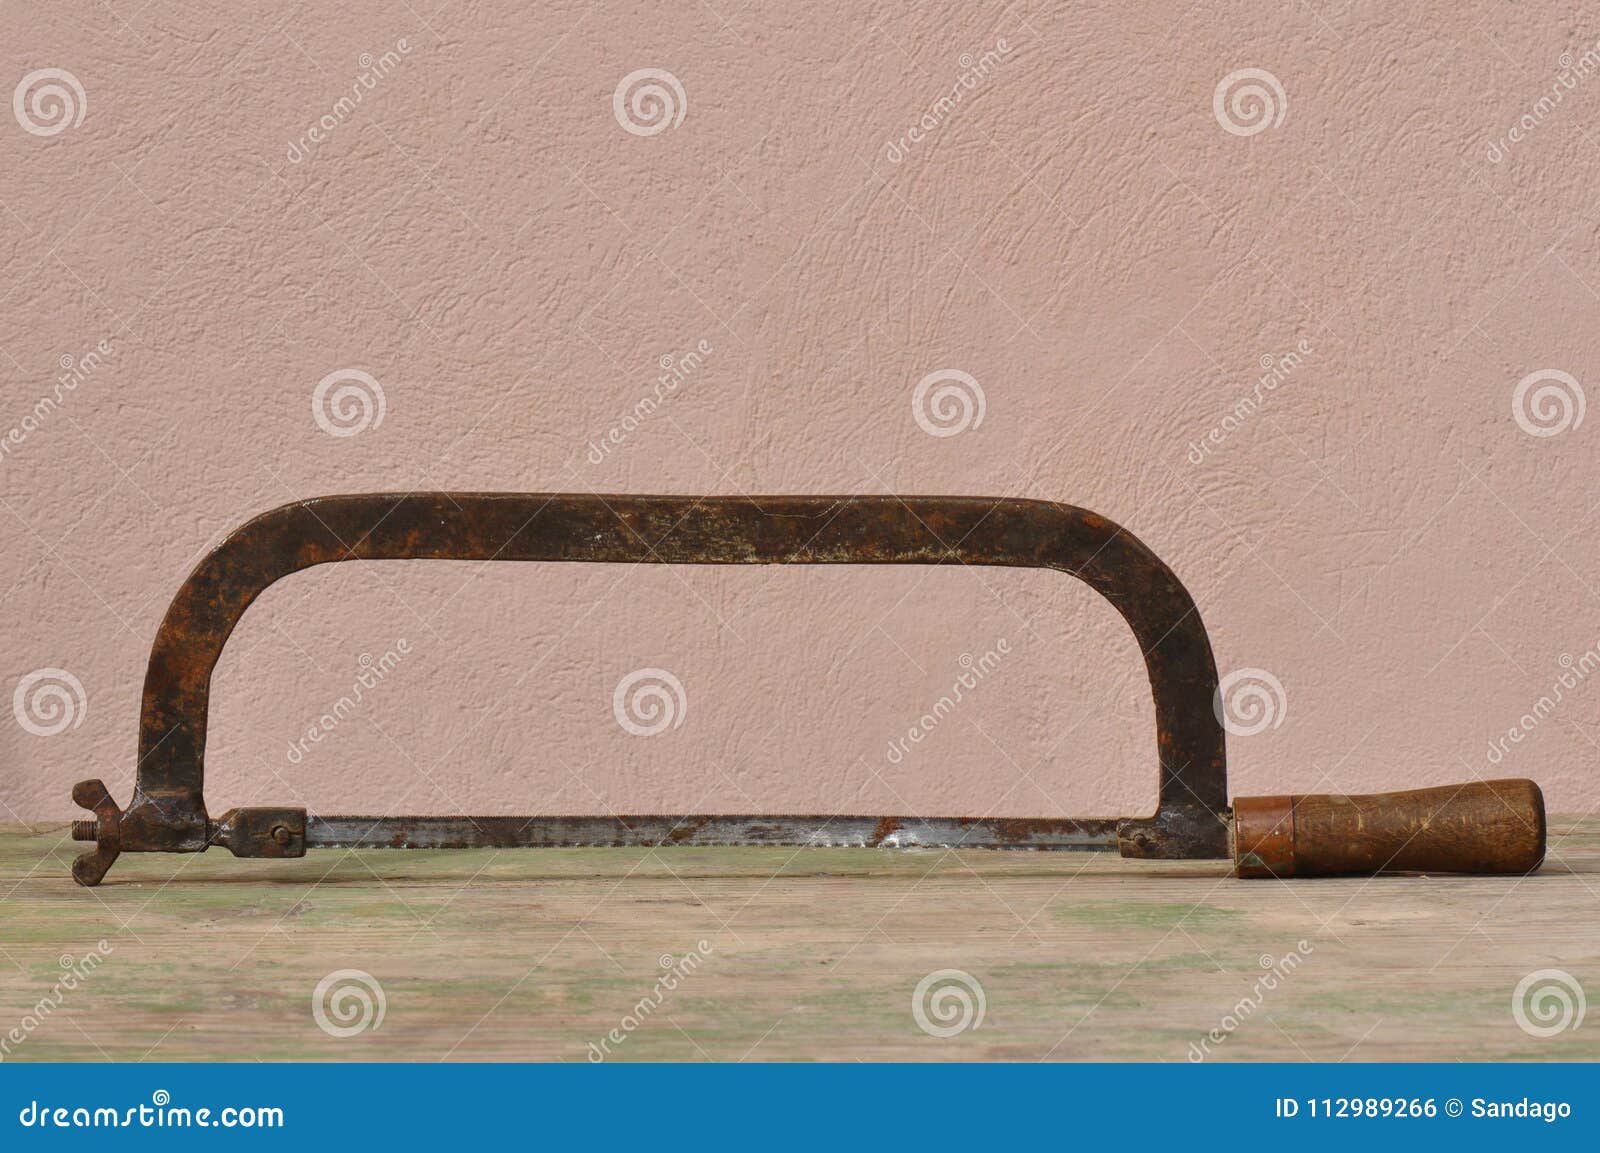 https://thumbs.dreamstime.com/z/macro-detail-old-rusty-hacksaw-carpentry-carver-old-rusty-hacksaw-112989266.jpg